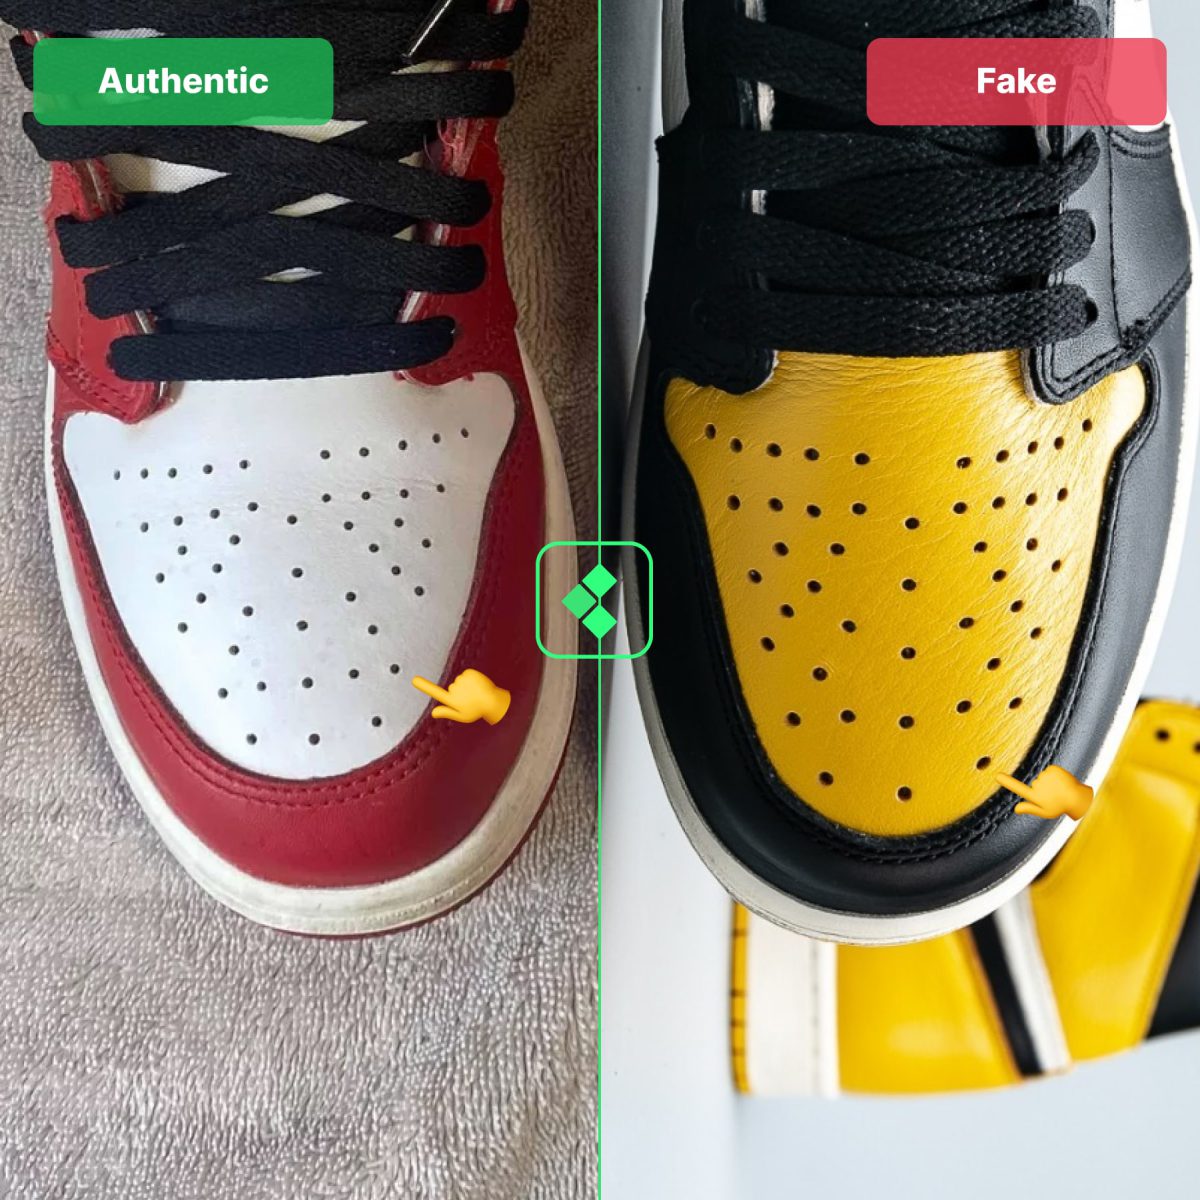 Jordan 1 GS Fake Vs Real Comparison - Perforations